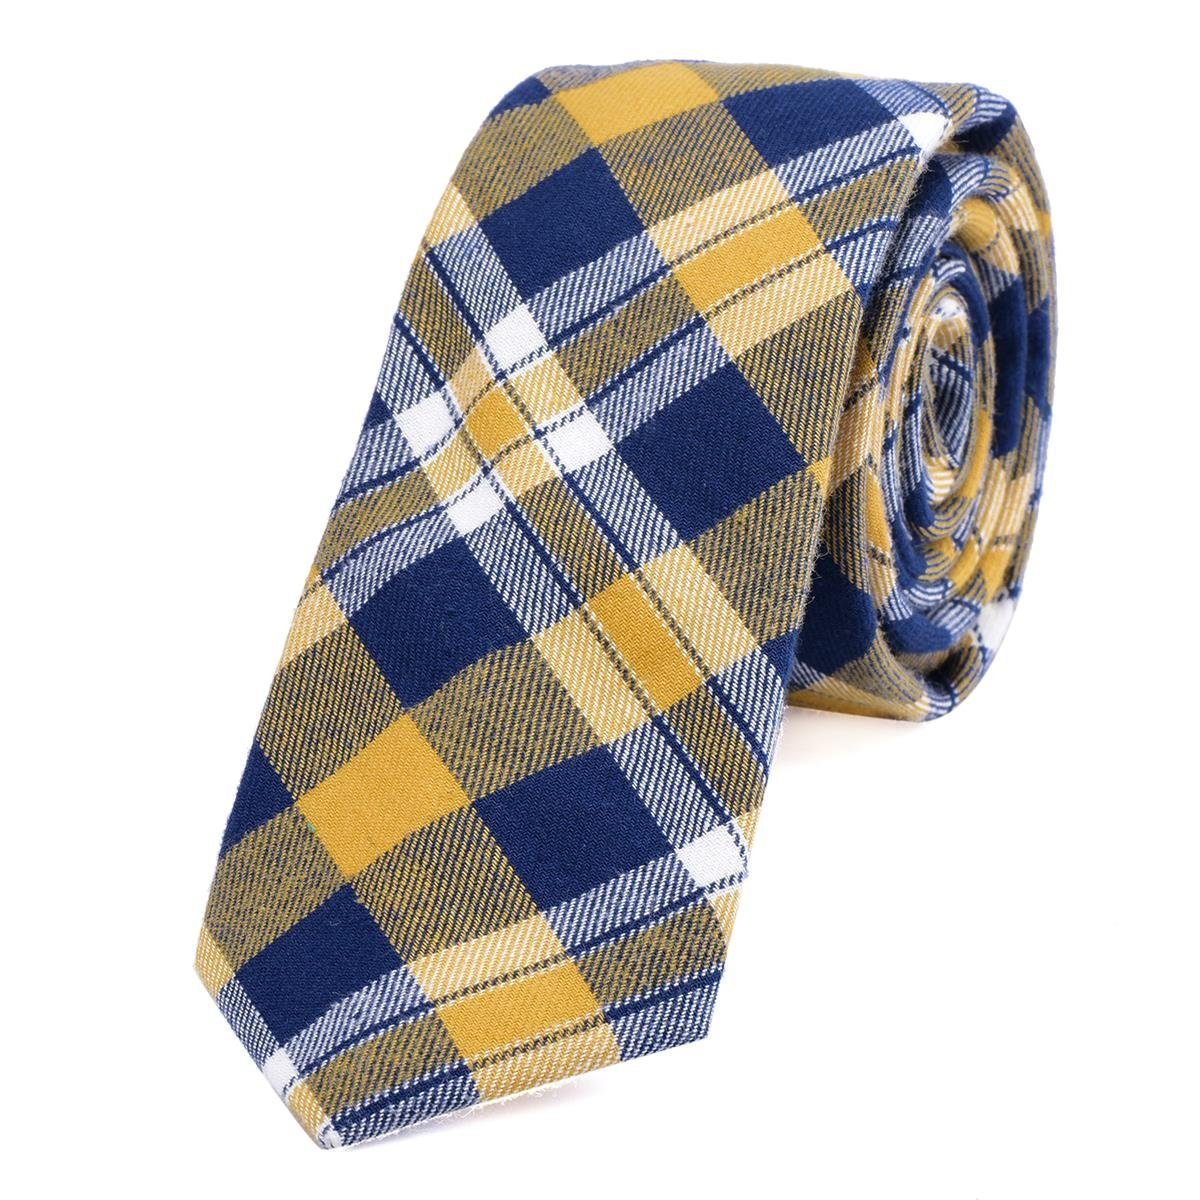 DonDon Krawatte Herren Krawatte 6 cm mit Karos oder Streifen (Packung, 1-St., 1x Krawatte) Baumwolle, kariert oder gestreift, für Büro oder festliche Veranstaltungen gelb-dunkelblau kariert 2